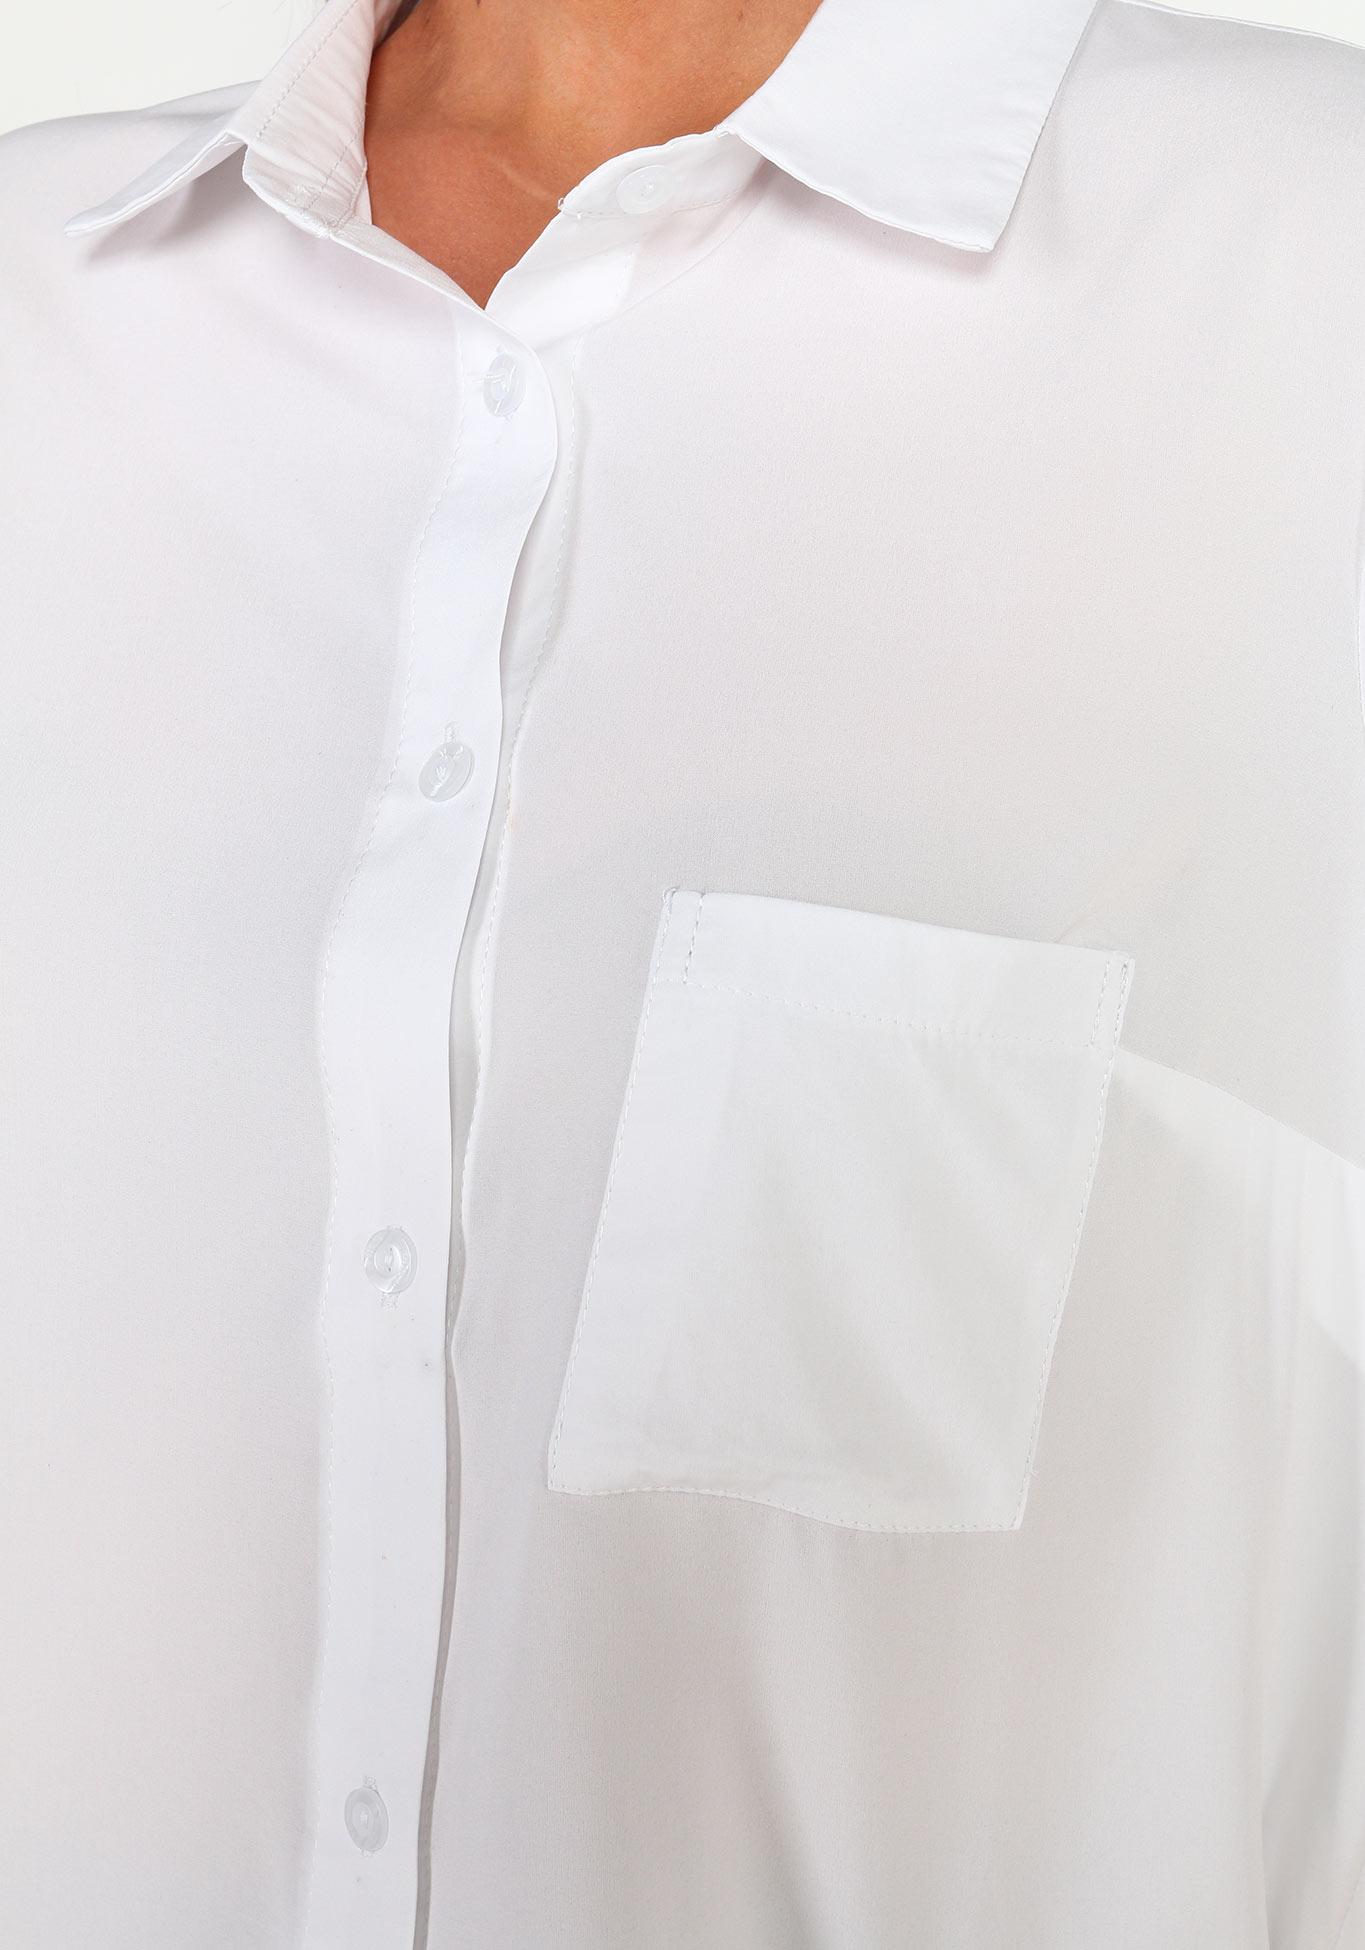 Рубашка свободного кроя с отложным воротником Simple Story, размер 50, цвет темно-синий - фото 5